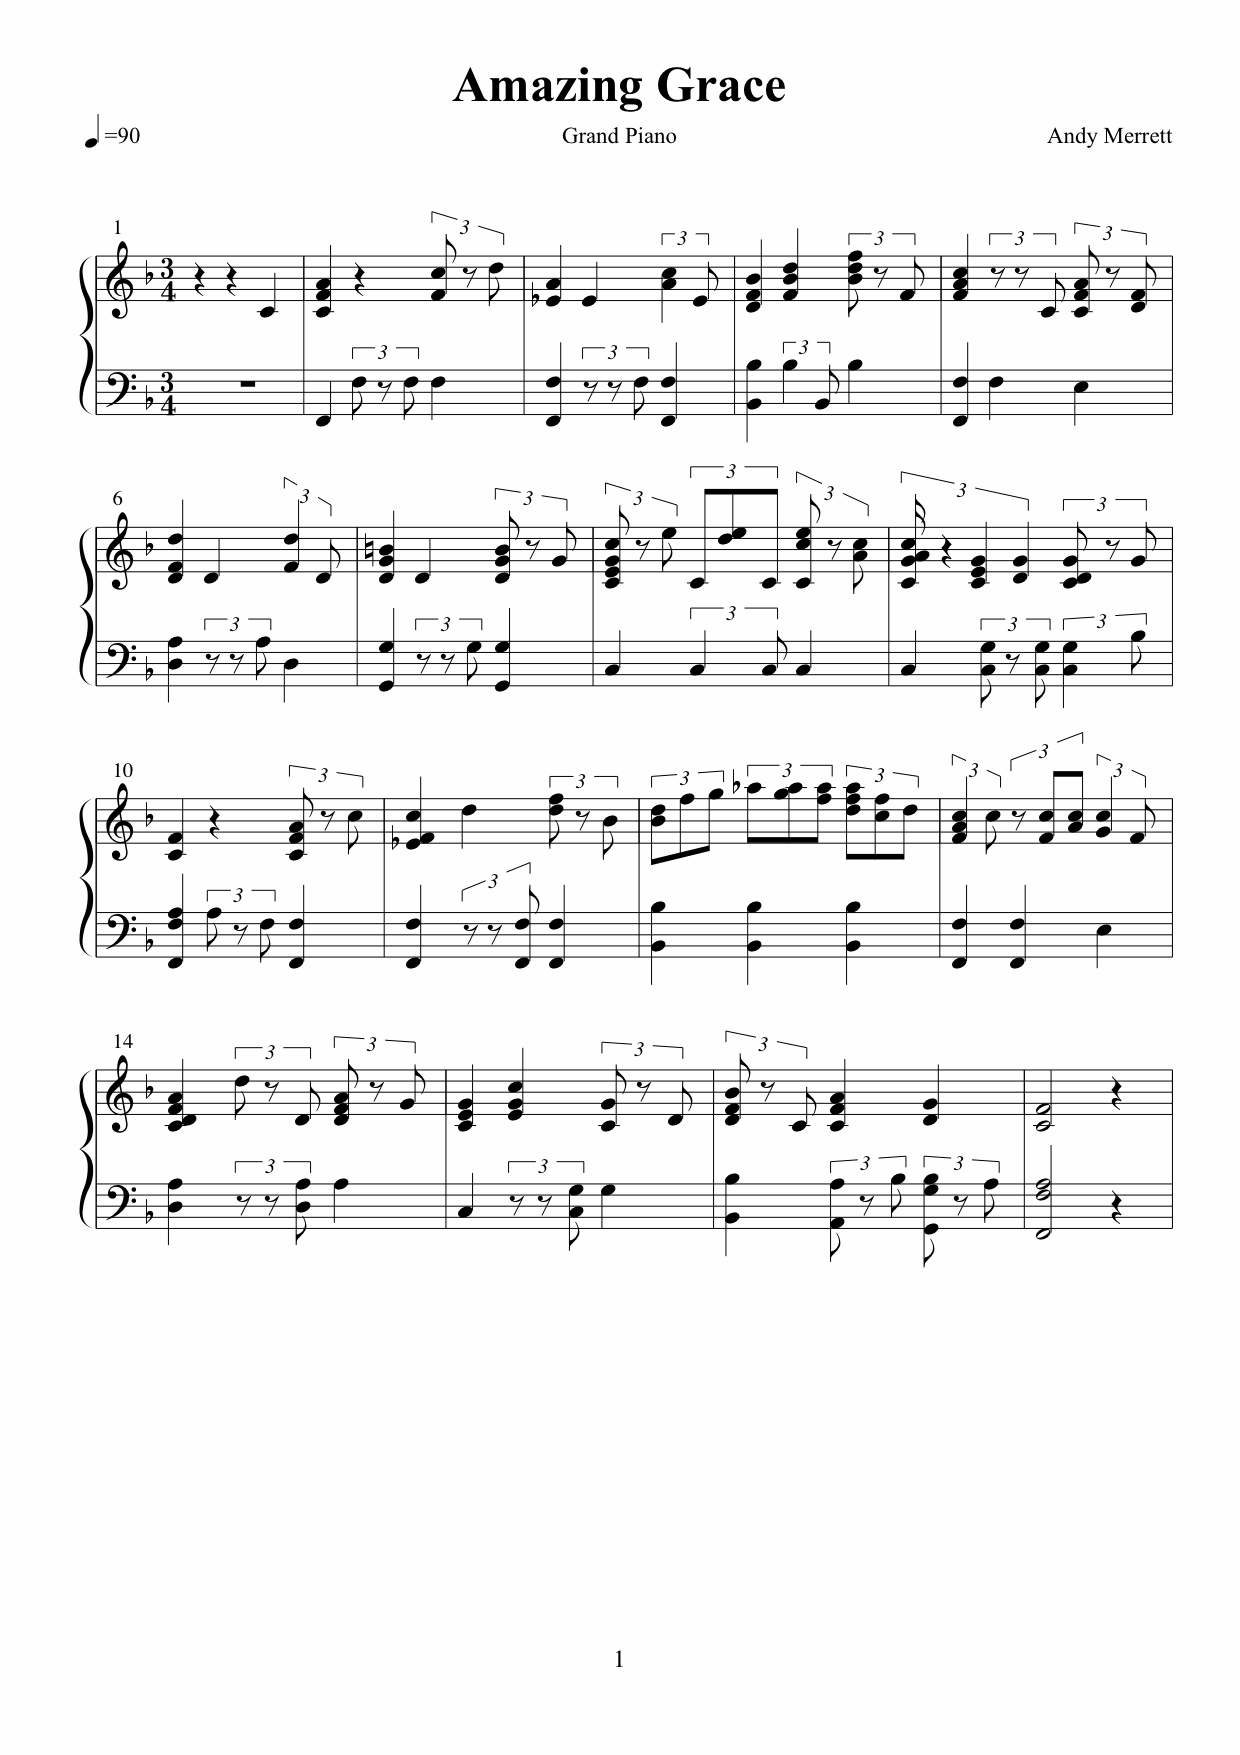 Amazing Grace sheet music variation 2